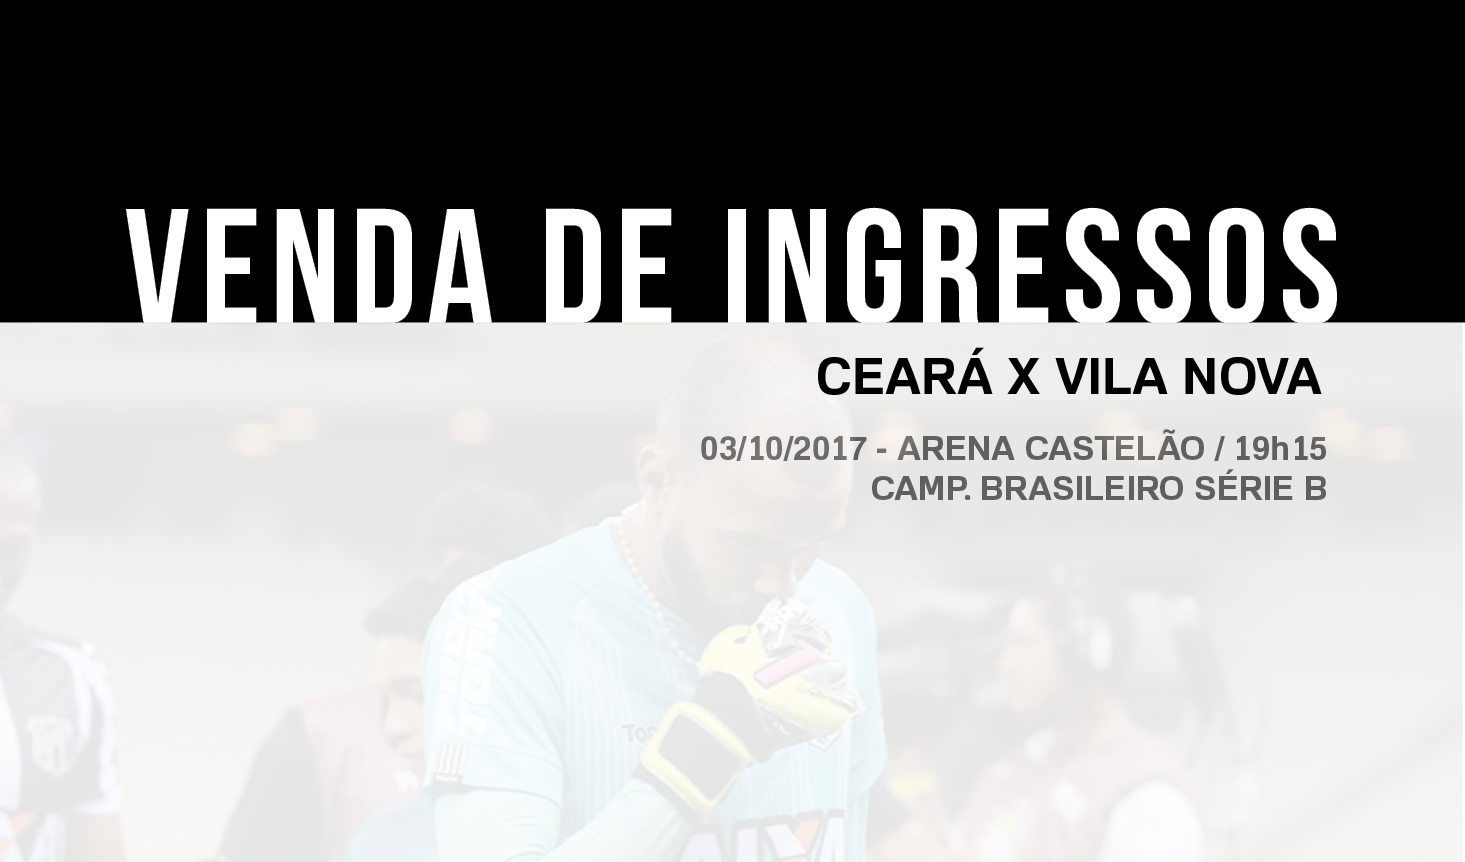 Ceará x Vila Nova: Confira informações sobre a venda de ingressos